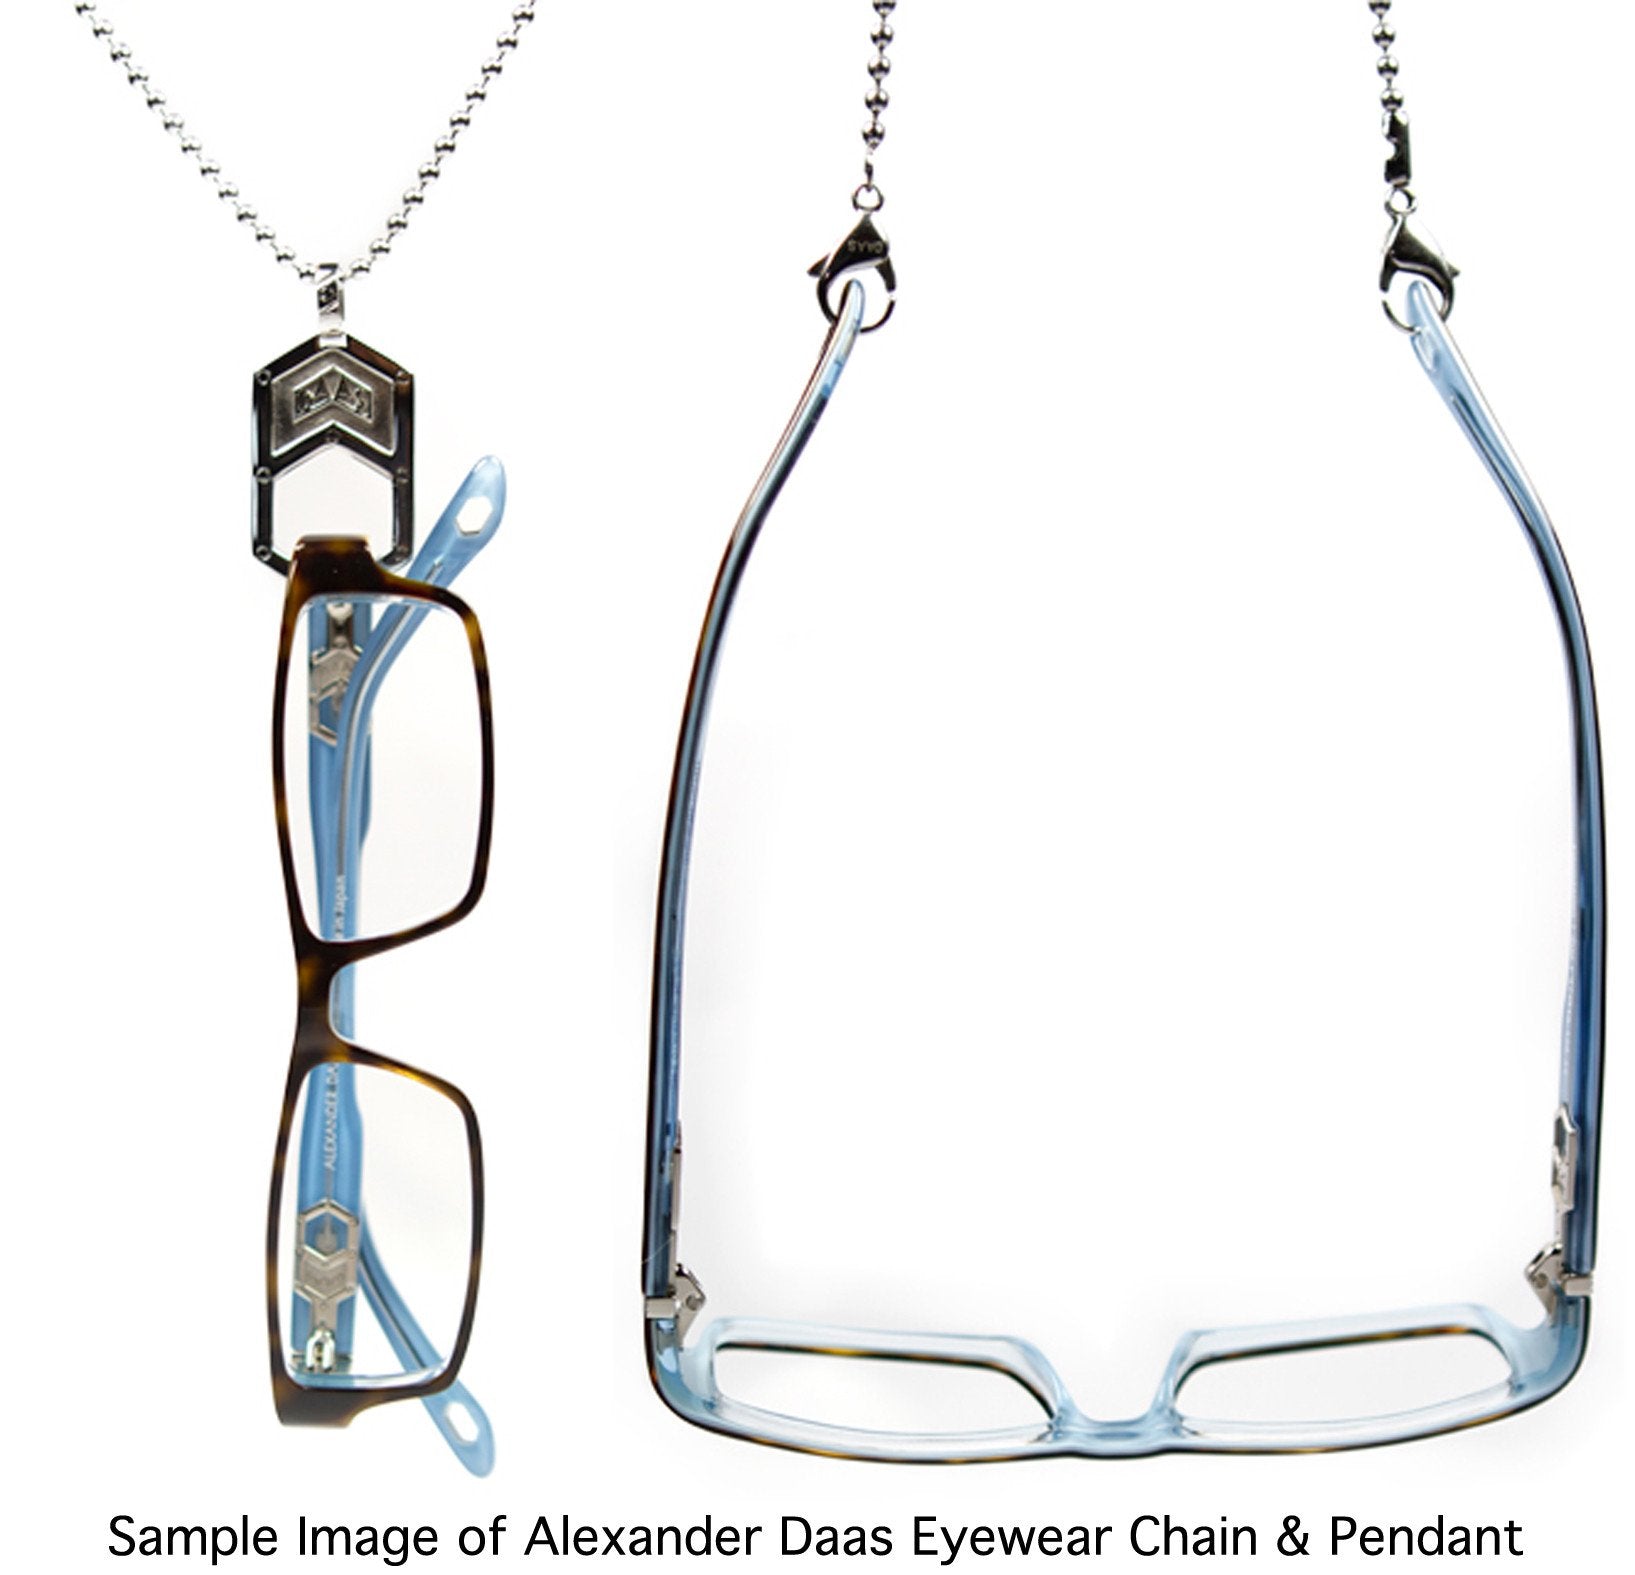 Alexander Daas - Wisdom Y51 Eyeglasses - Sample Image of Eyewear Chain & Pendant Accessories